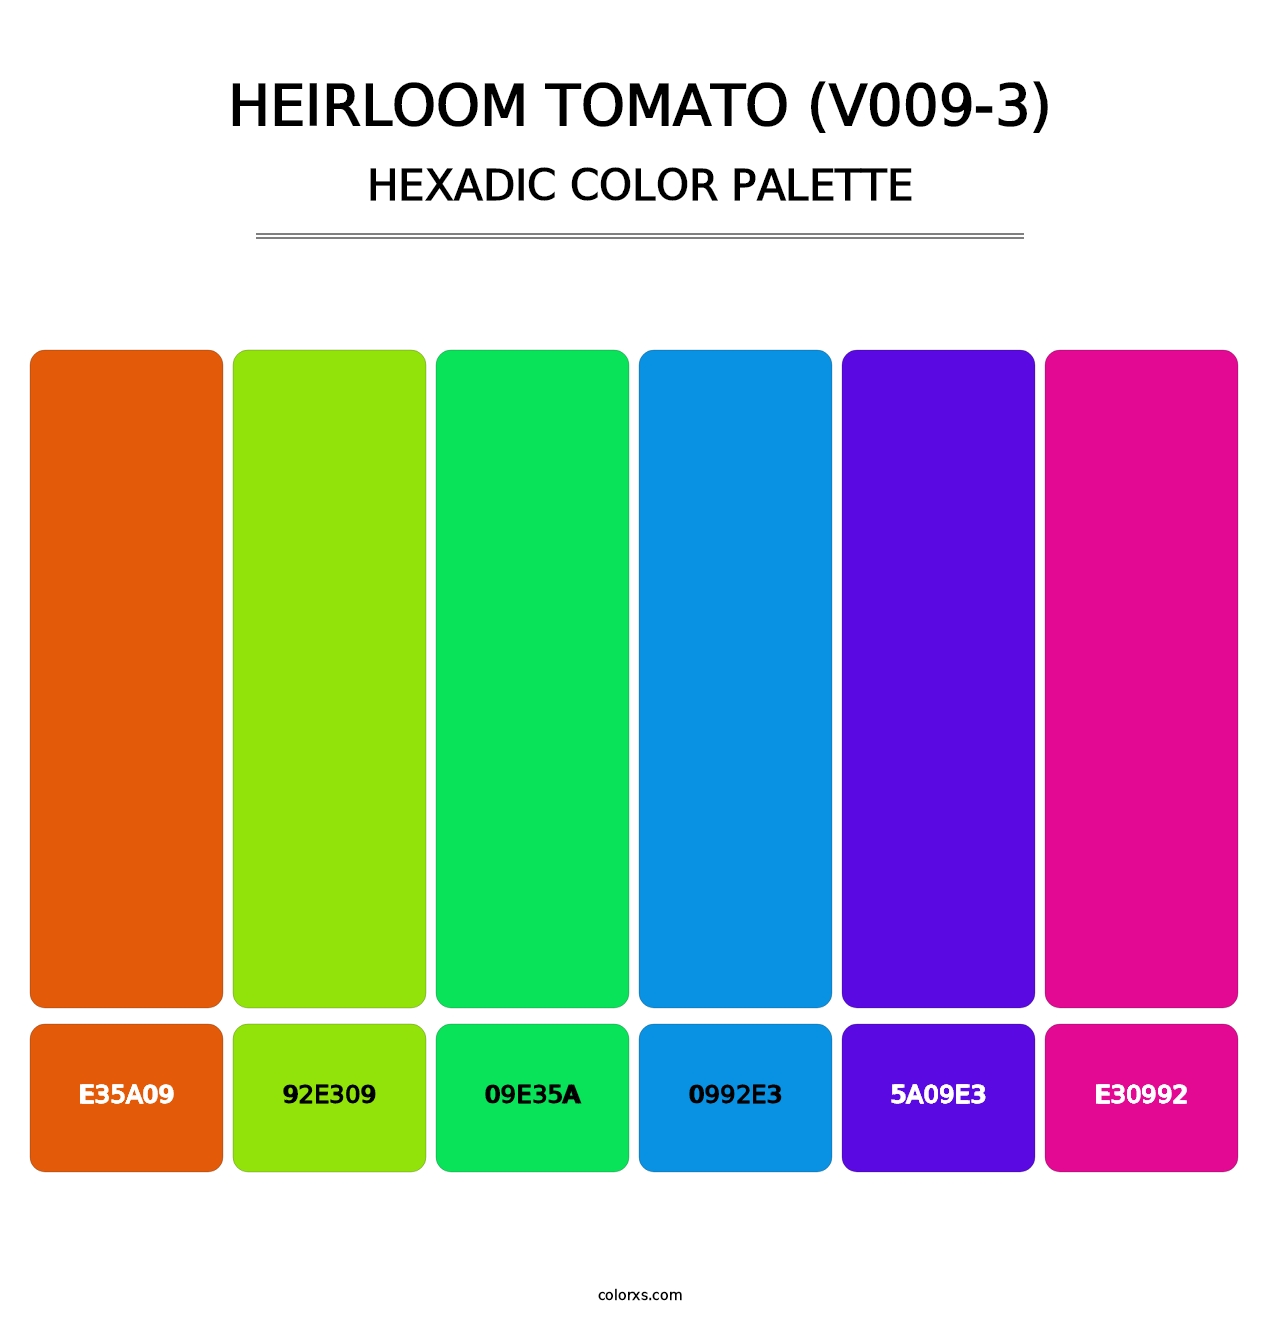 Heirloom Tomato (V009-3) - Hexadic Color Palette